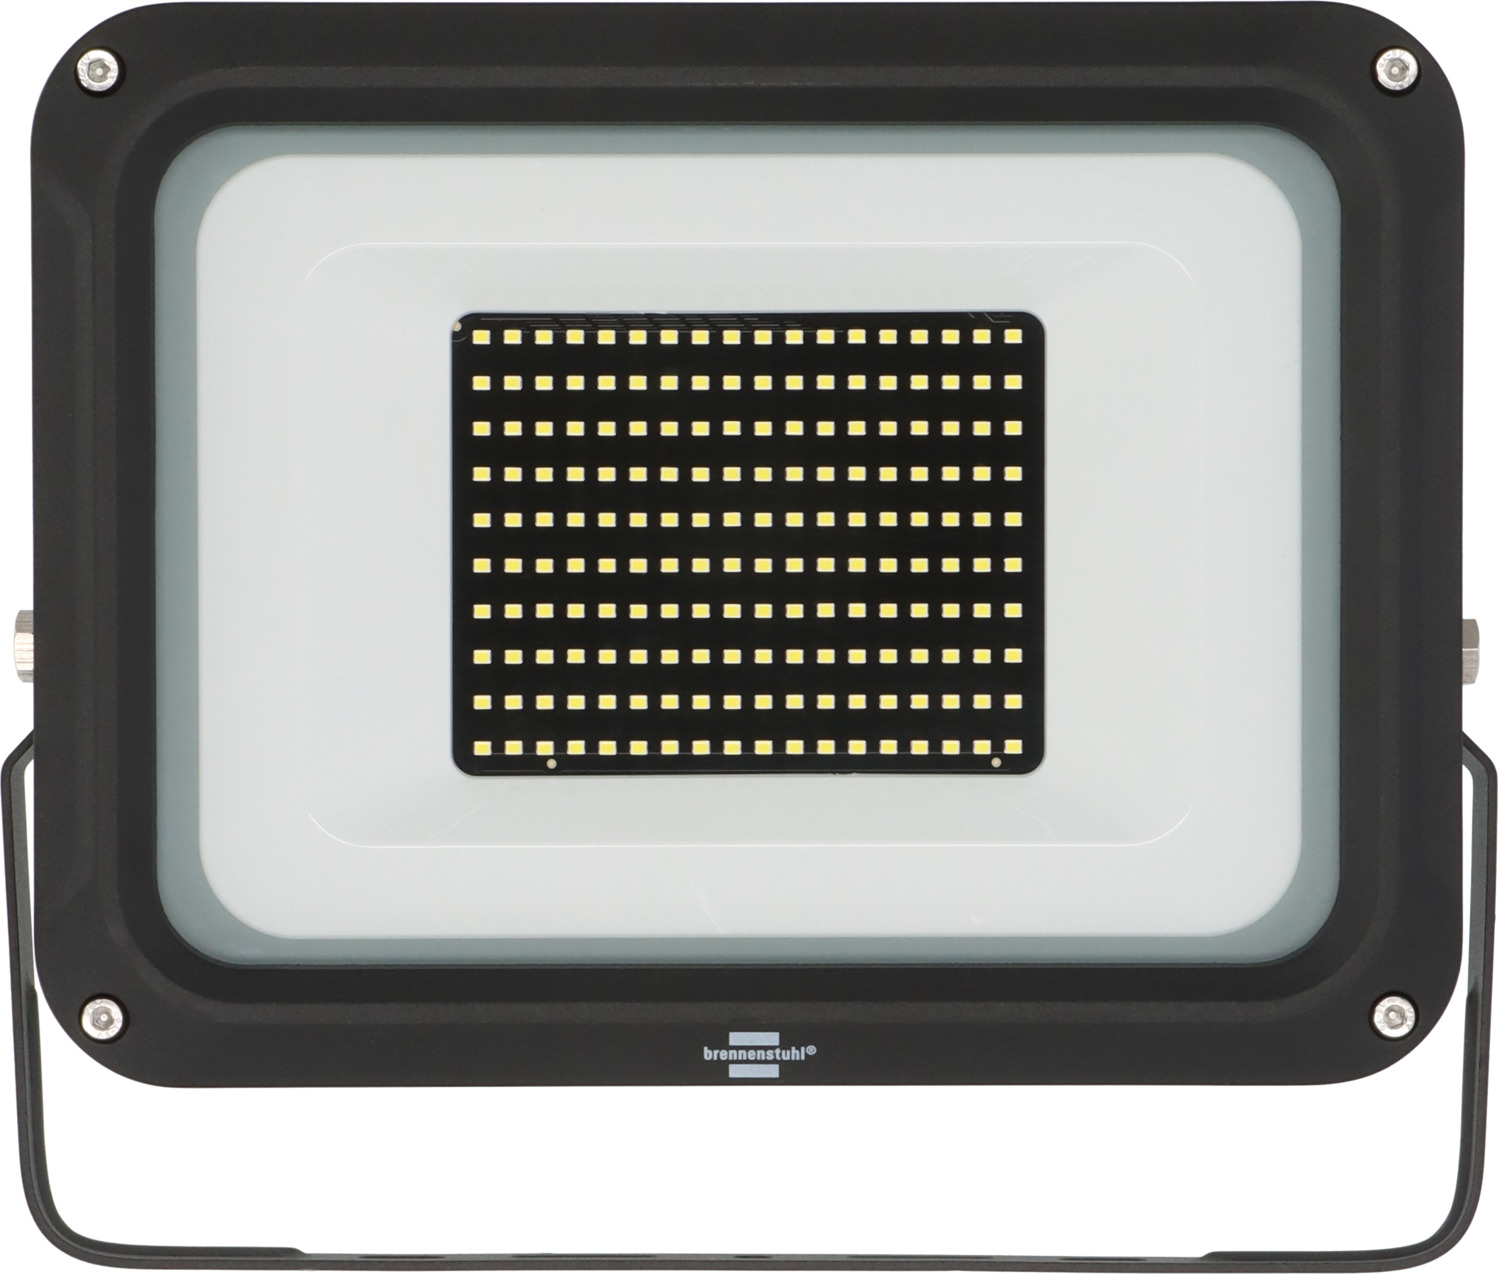 IP65 14060, | JARO 100W, brennenstuhl® 11500lm, LED Strahler